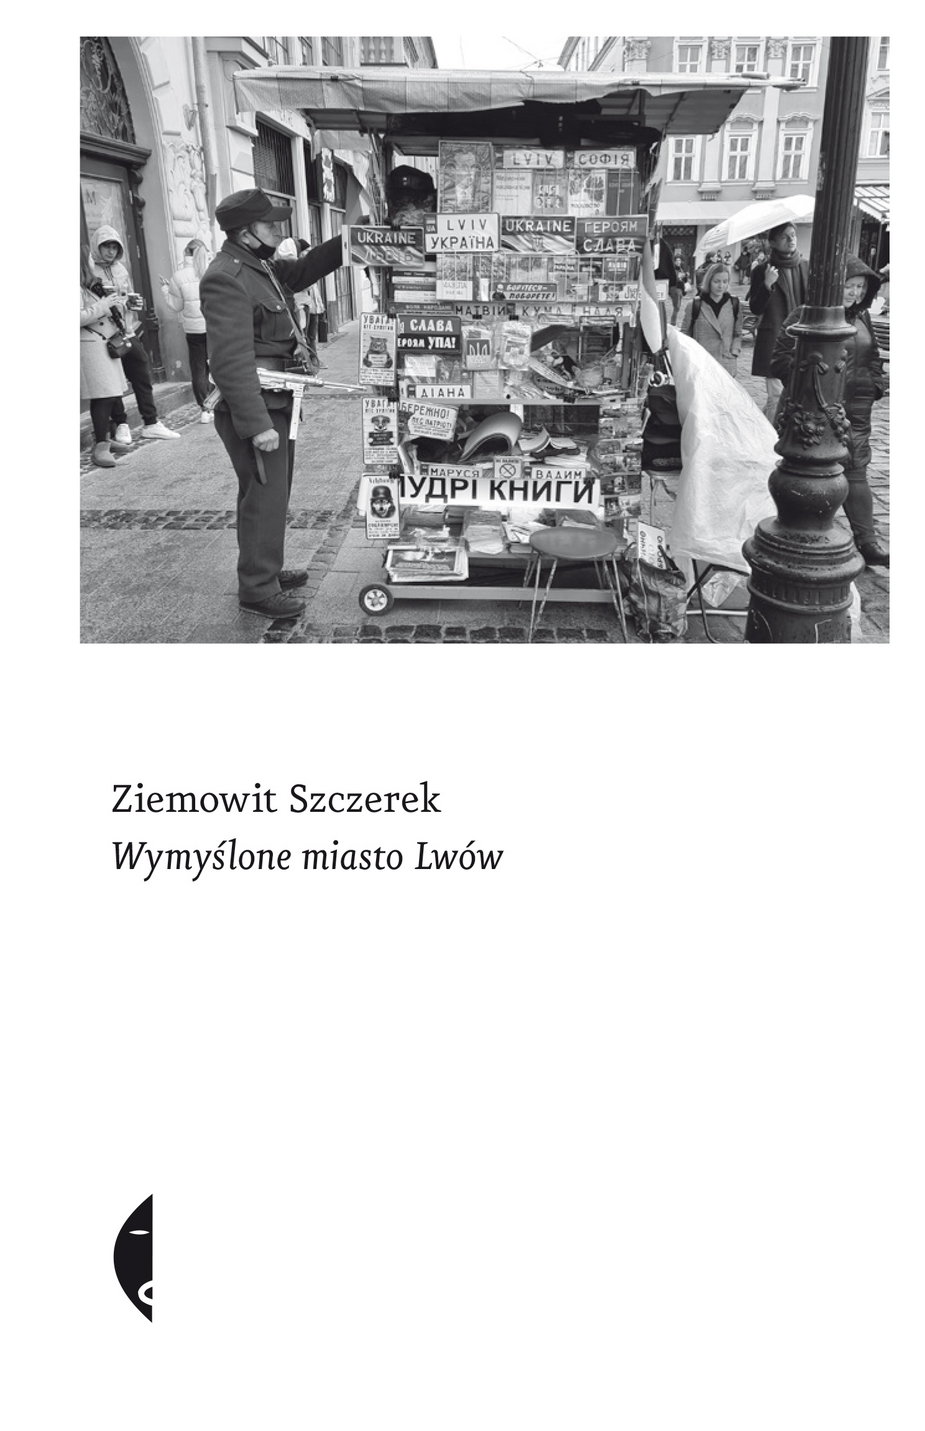 "Wymyślone miasto Lwów" - fragment okładki książki